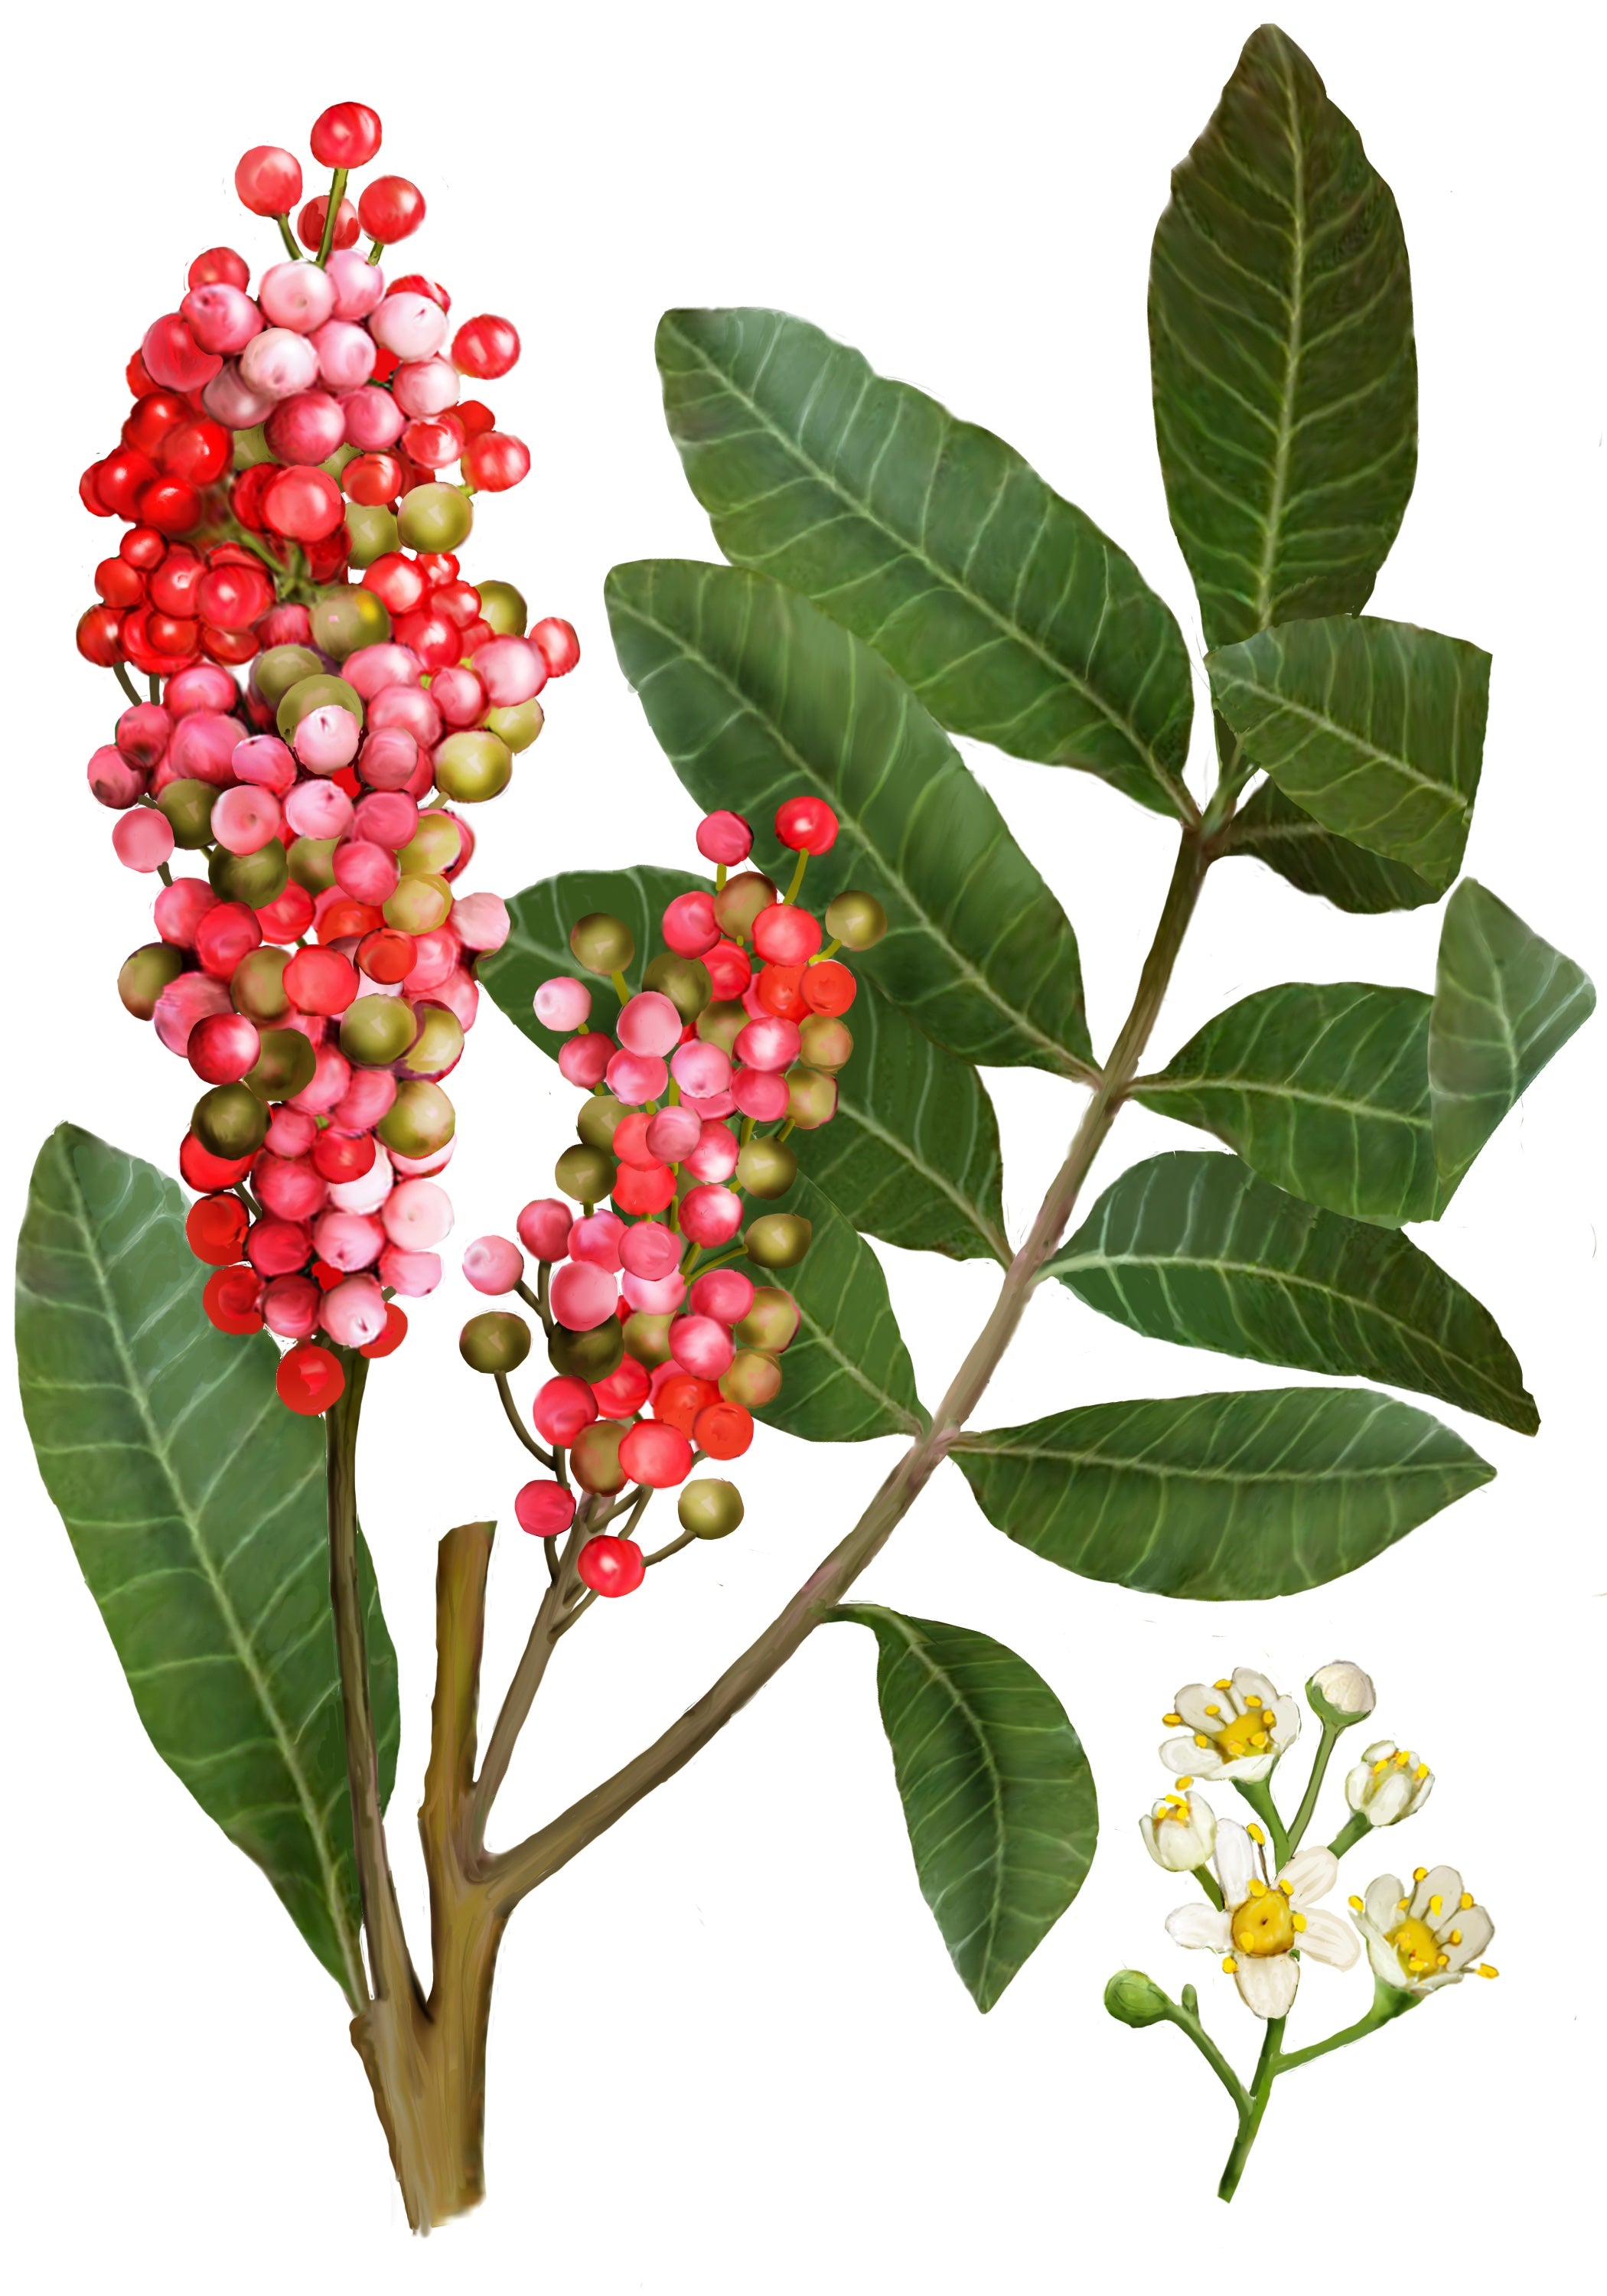 illustration of pink pepper plant